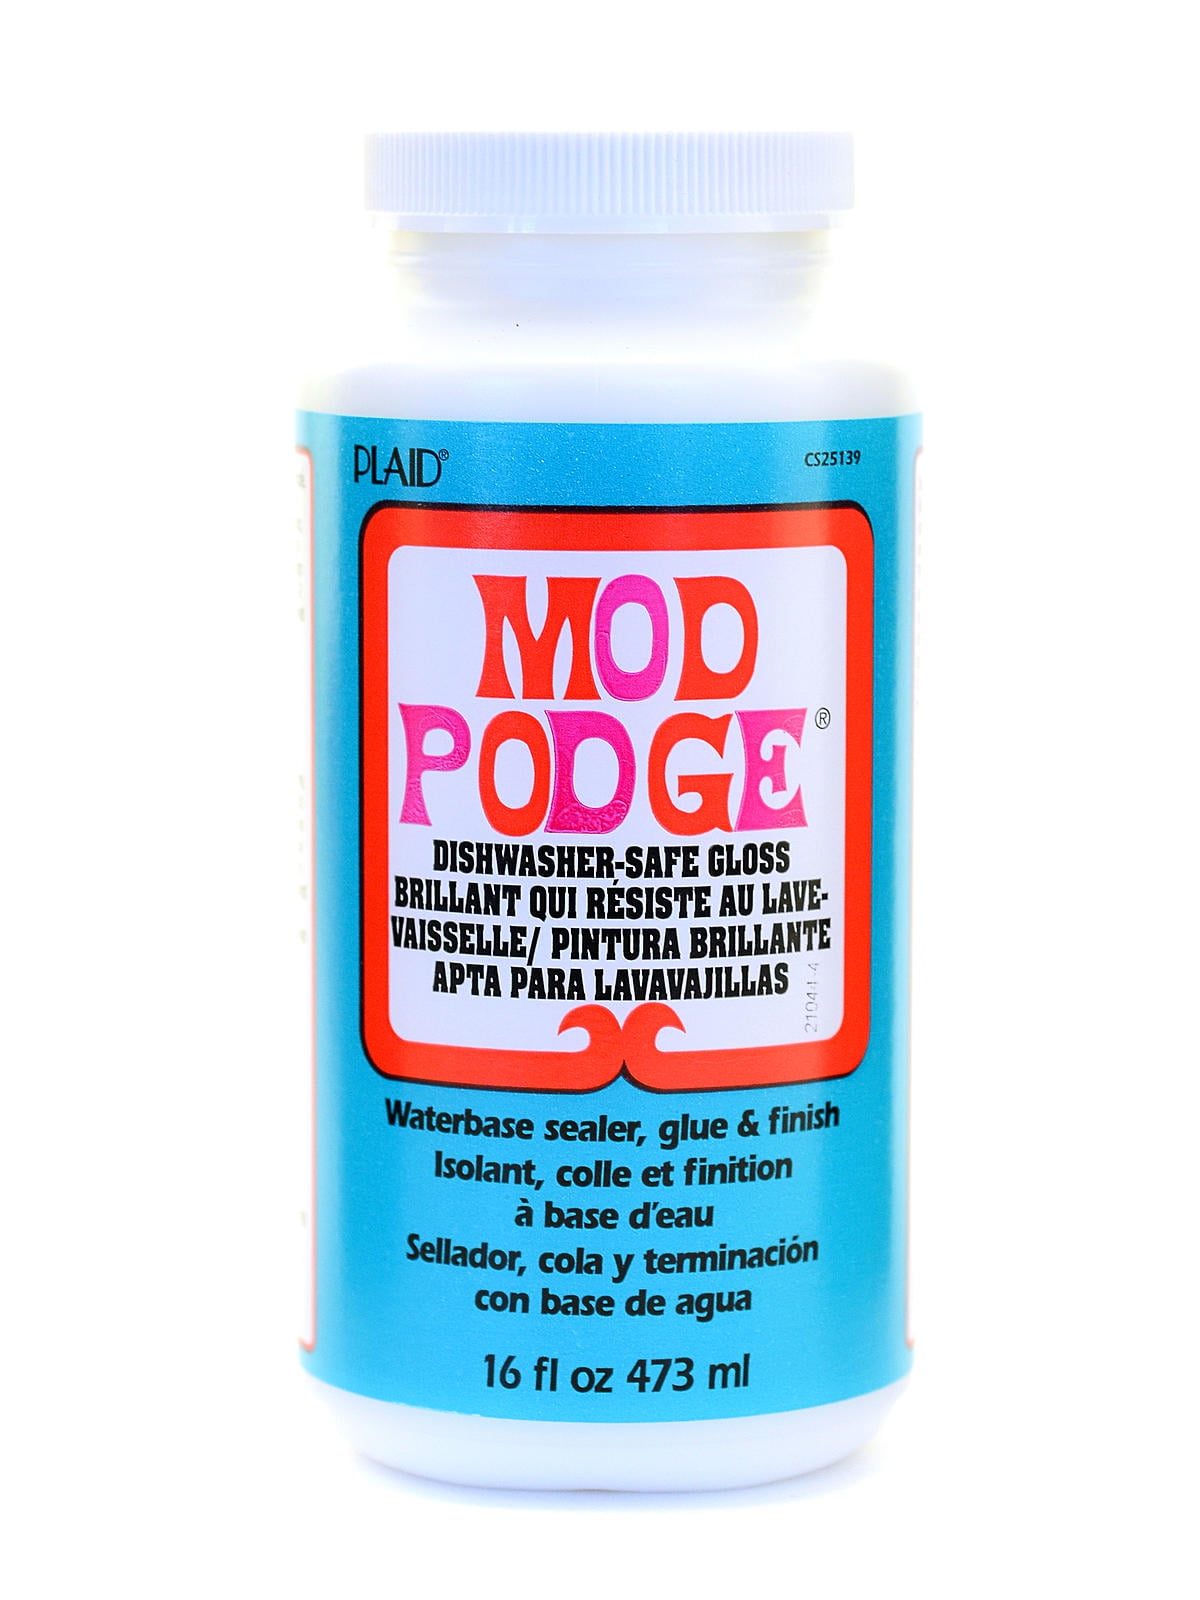 Mod Podge Medium Formulas dishwasher safe gloss, 16 oz. (pack of 2)